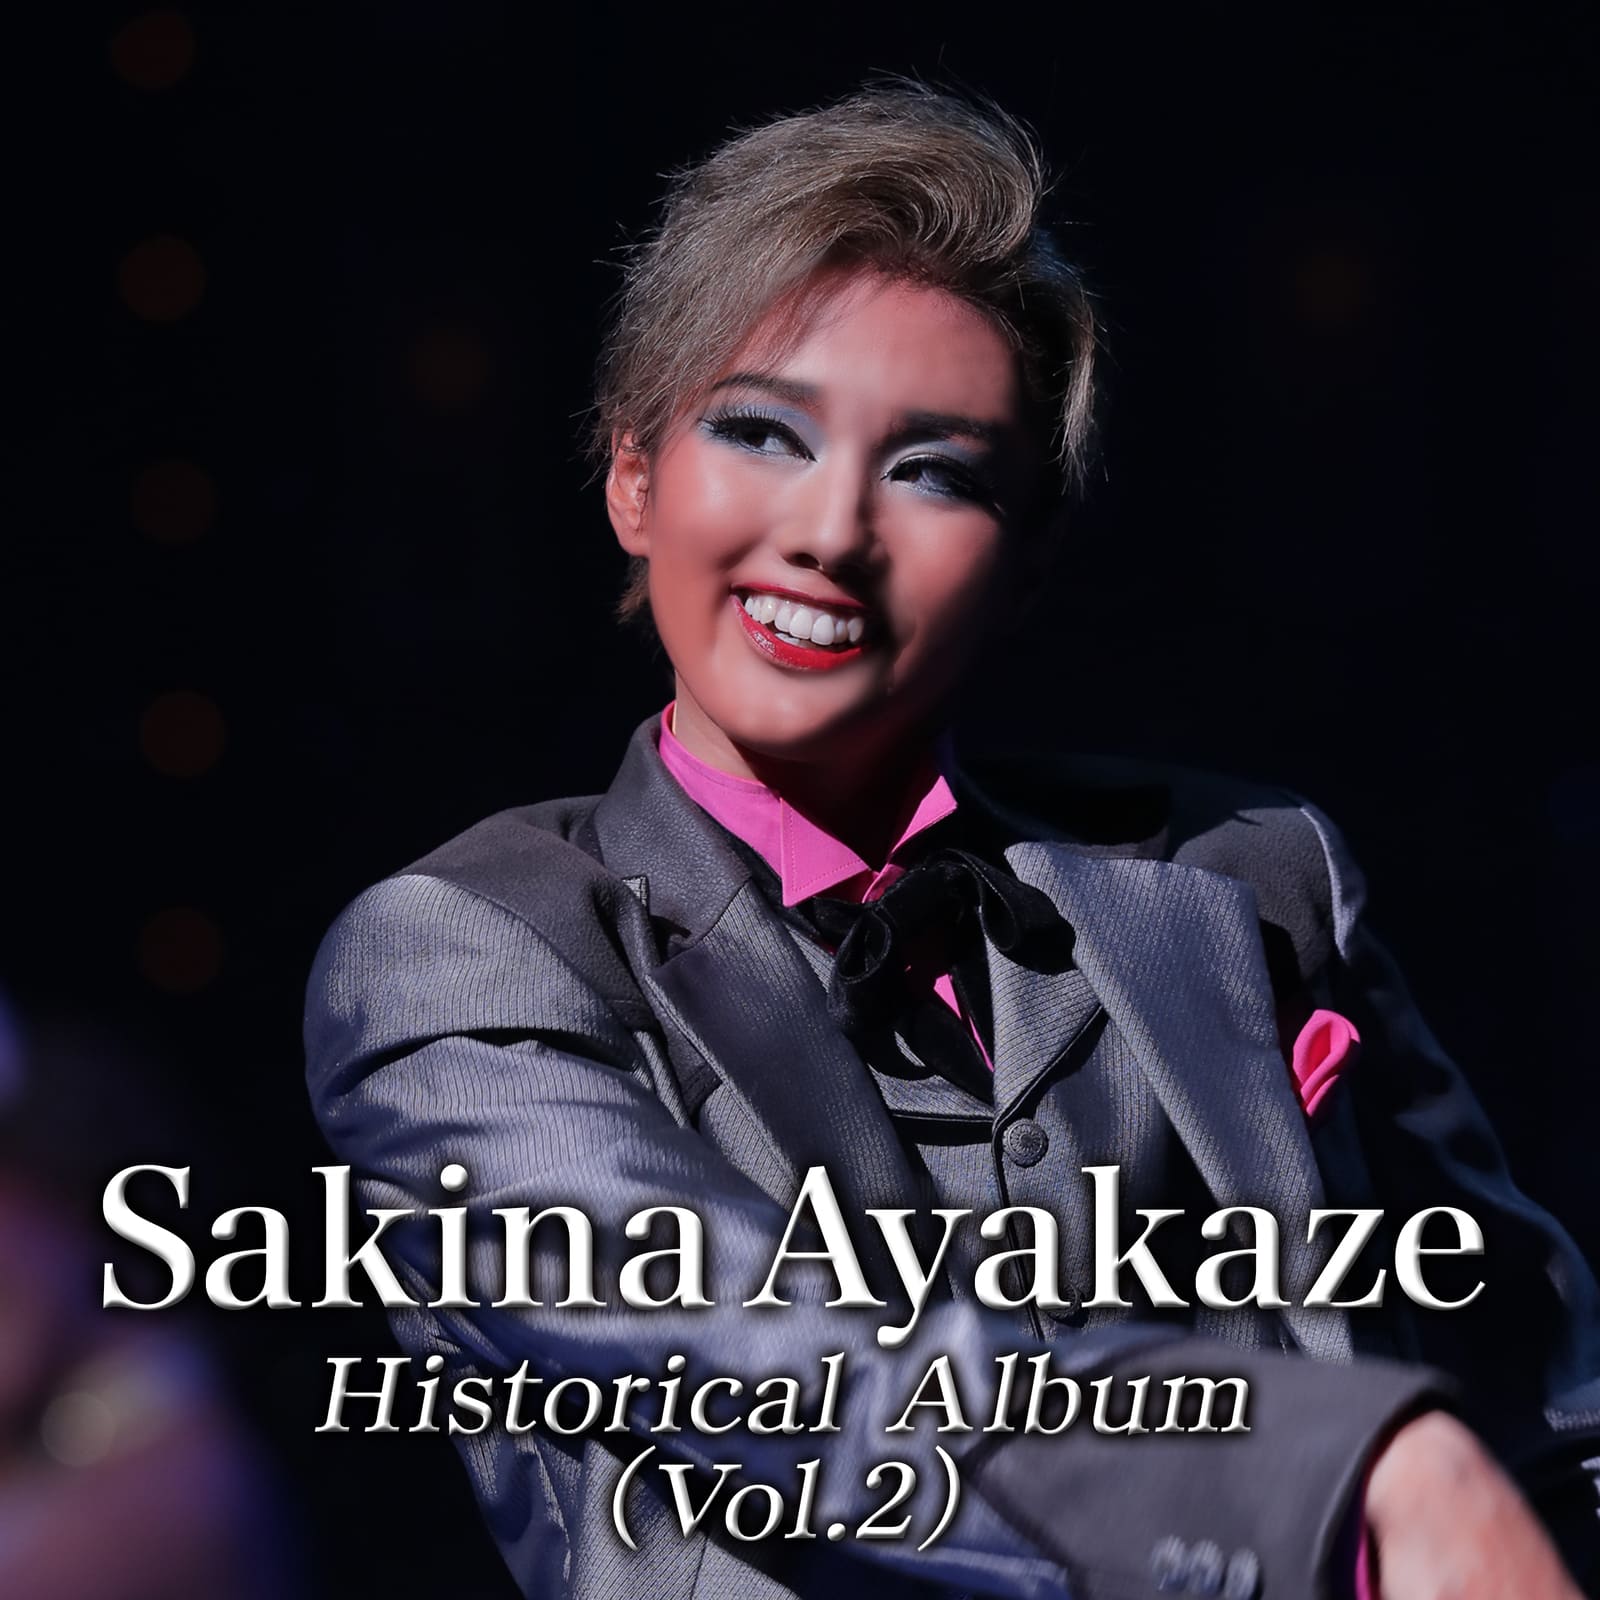 Sakina Ayakaze Historical Album Vol.2